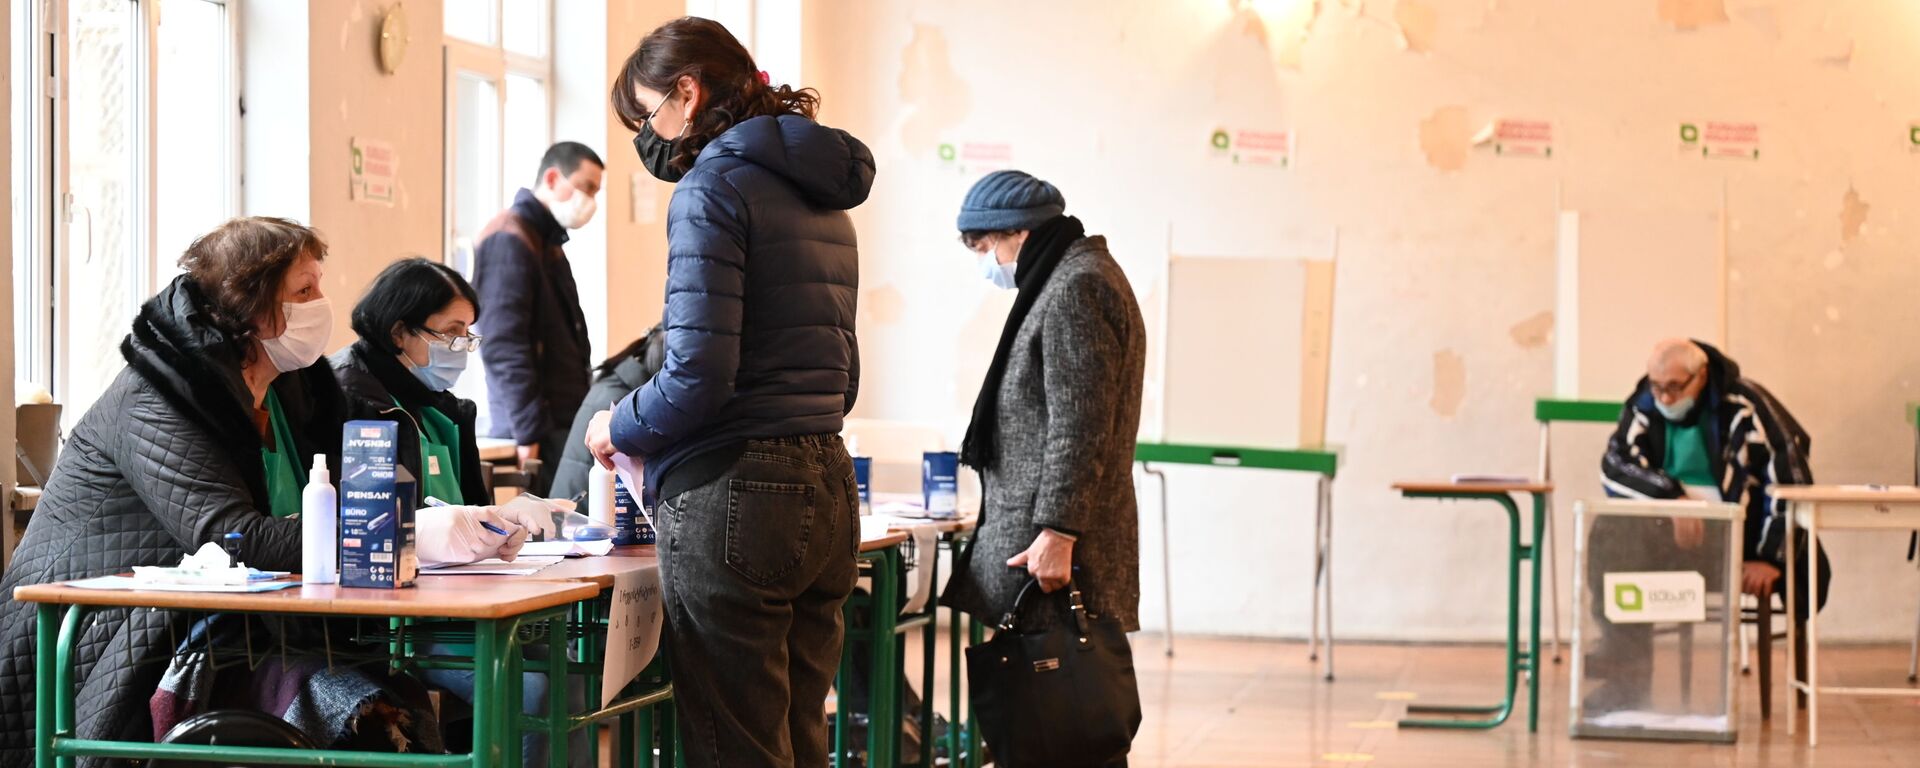 Парламентские выборы в Грузии - второй тур. 21 ноября 2020 года - Sputnik Грузия, 1920, 01.10.2021